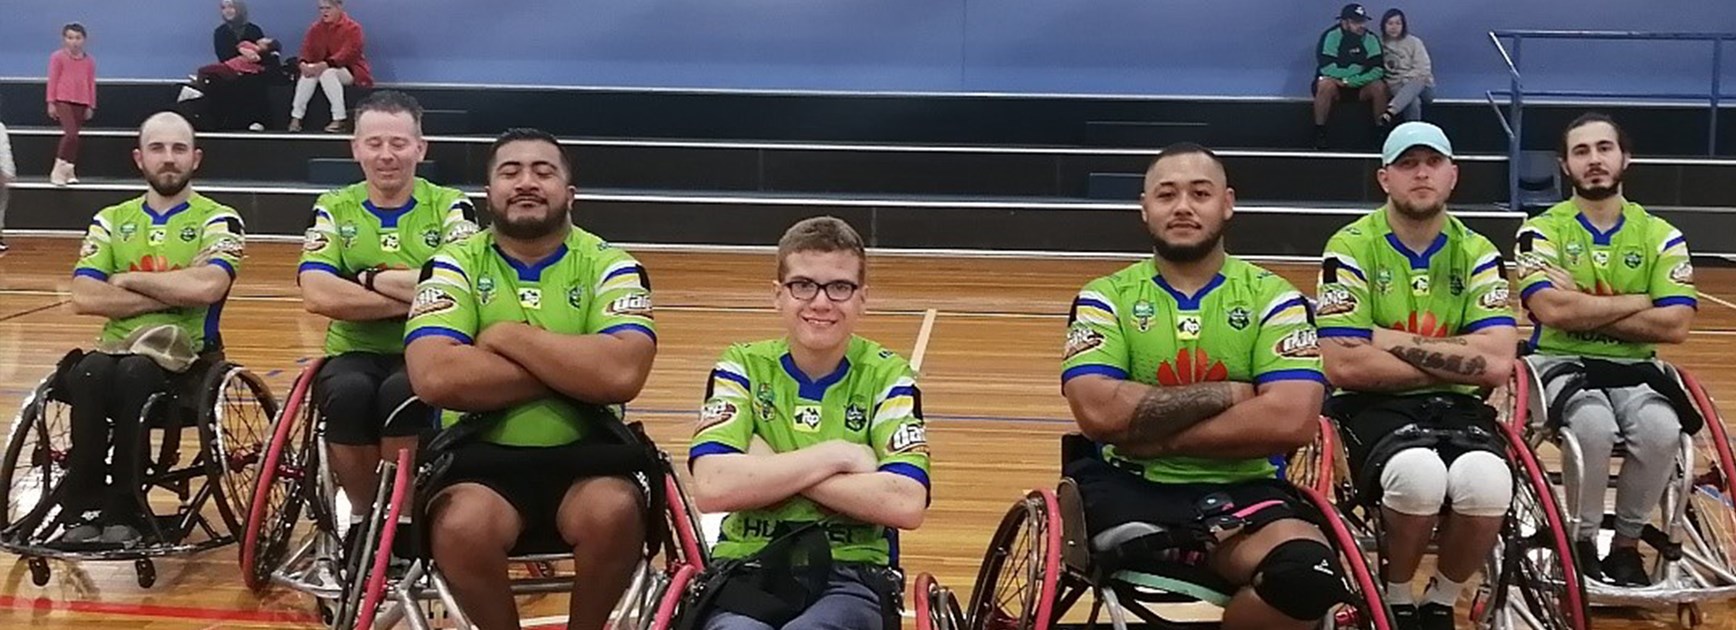 Canberra Raiders Wheelchair Rugby League team through to Grand Final